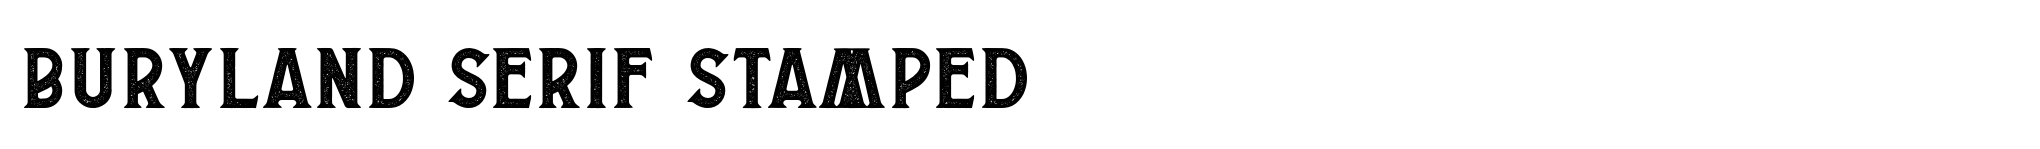 Buryland Serif Stamped image